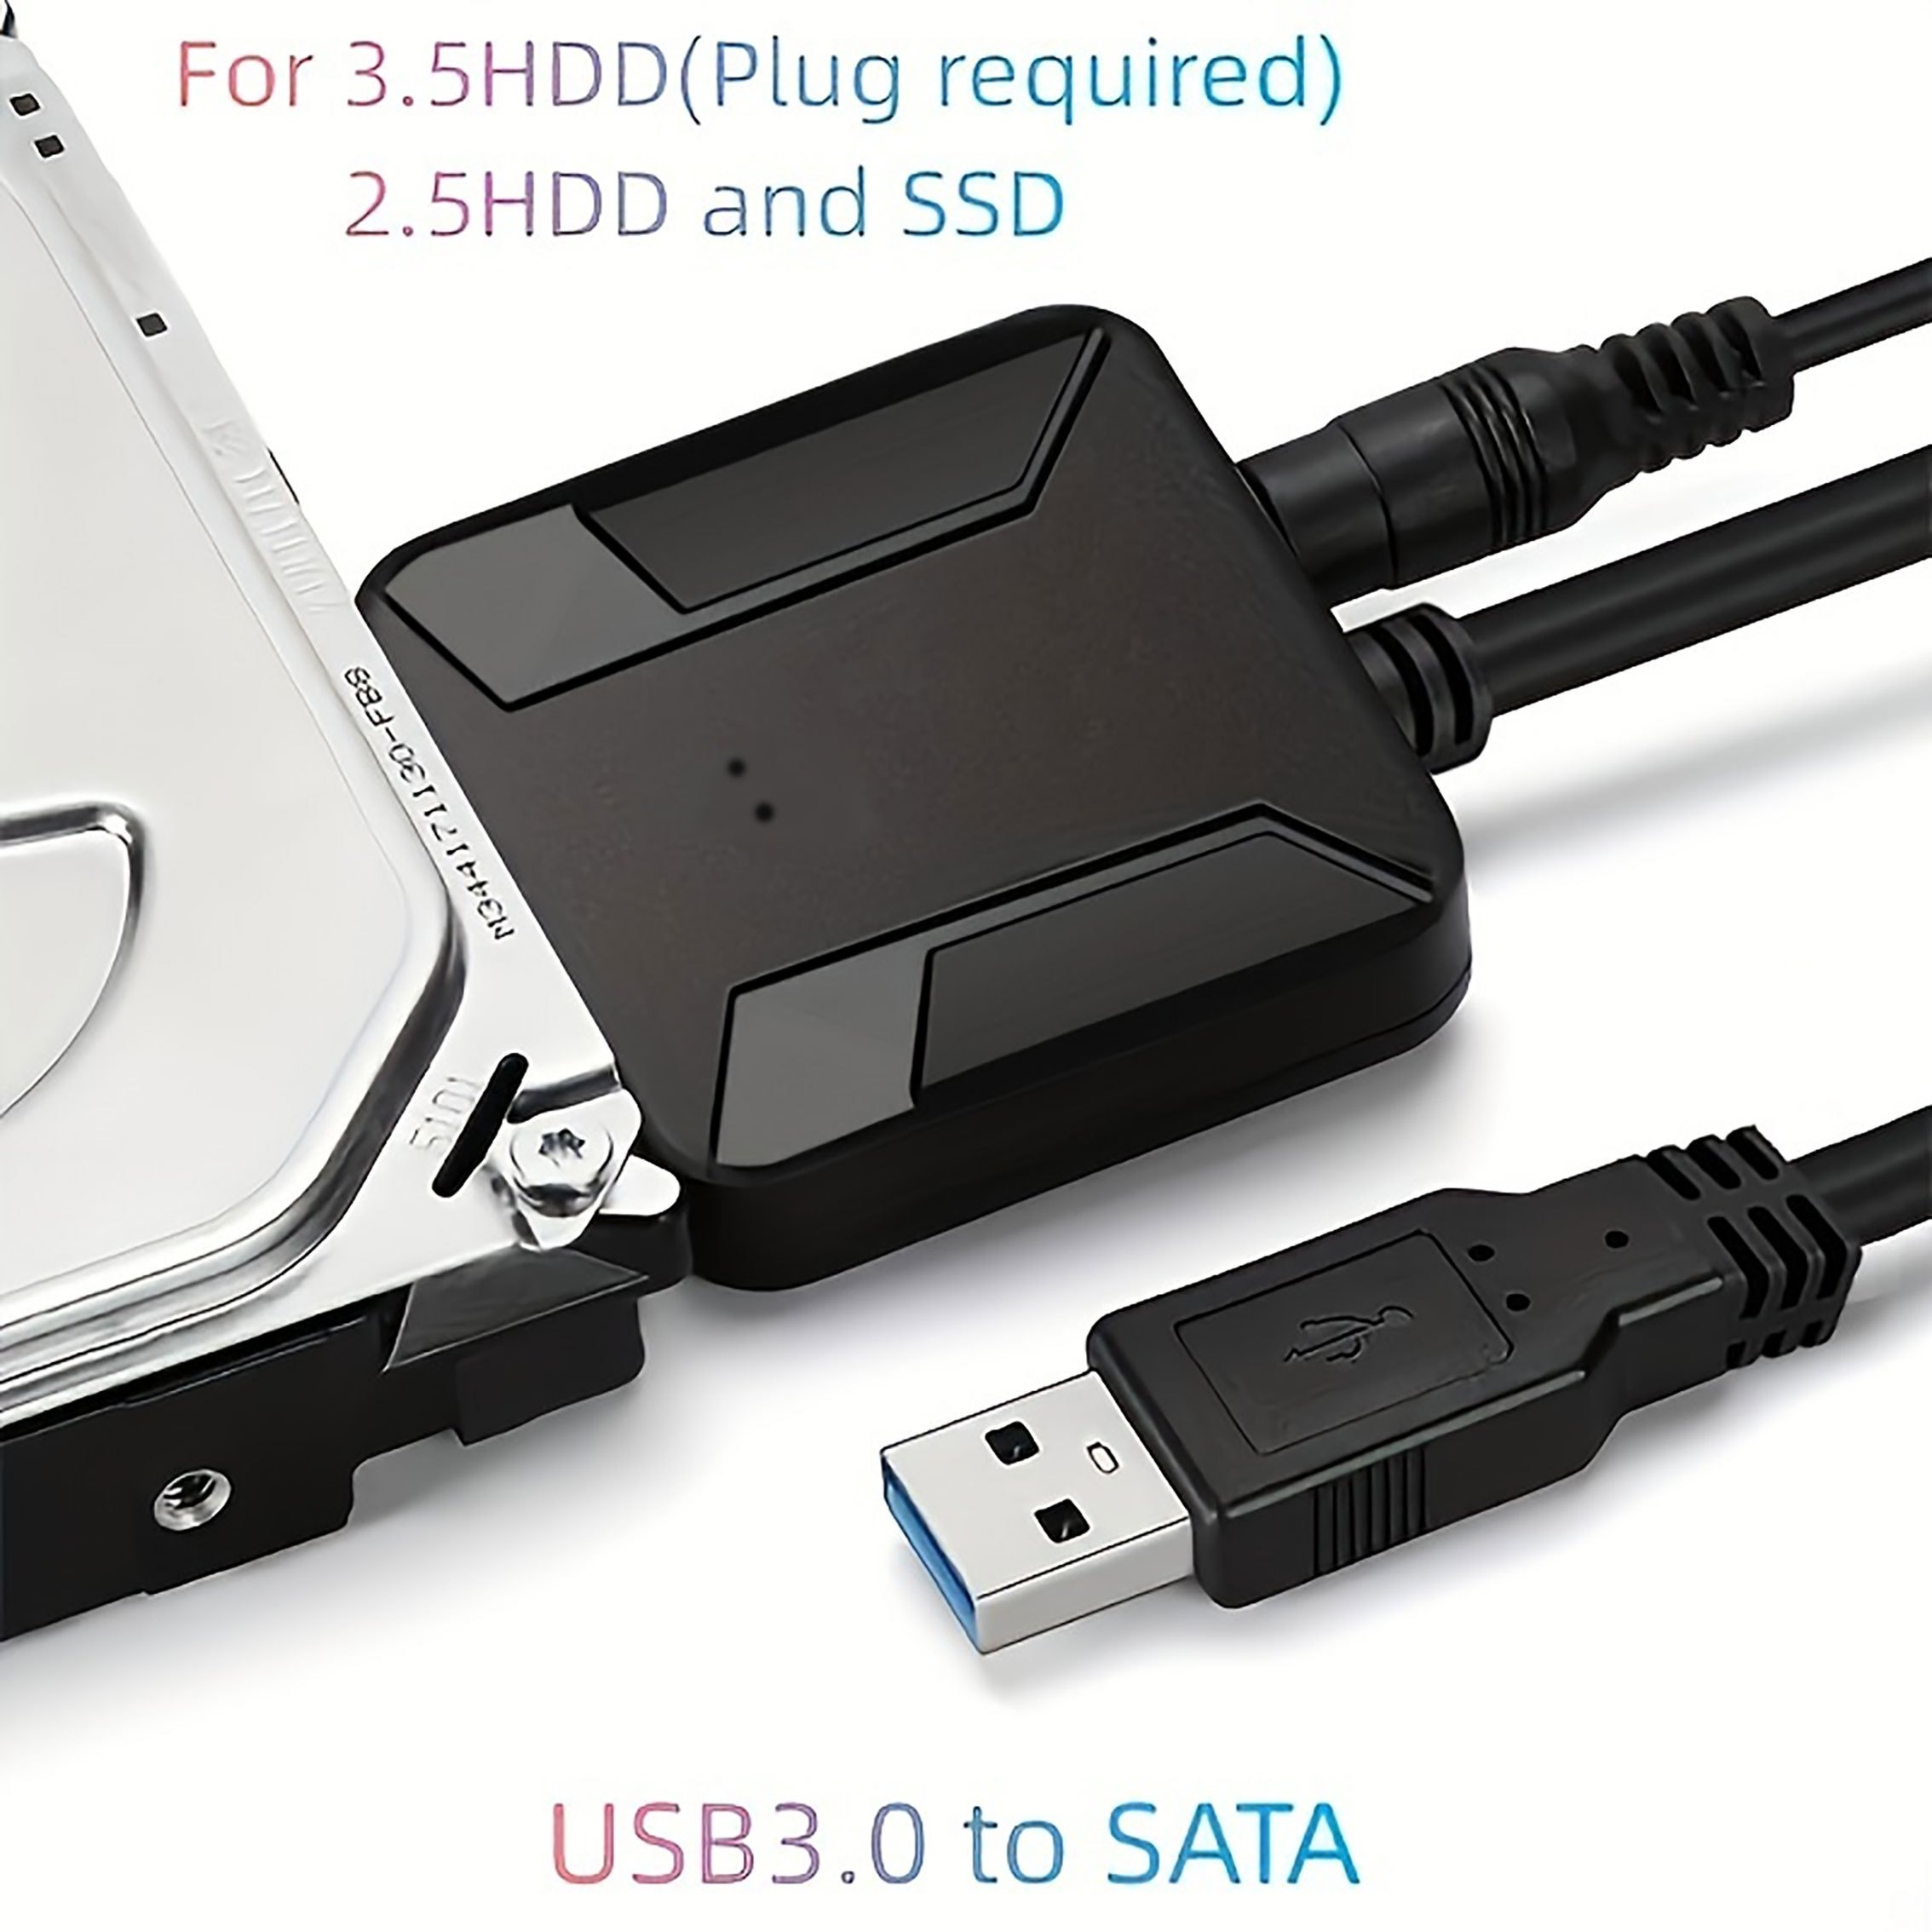 Câble adaptateur Sata 3 vers USB, 6Gbps pour disque dur externe